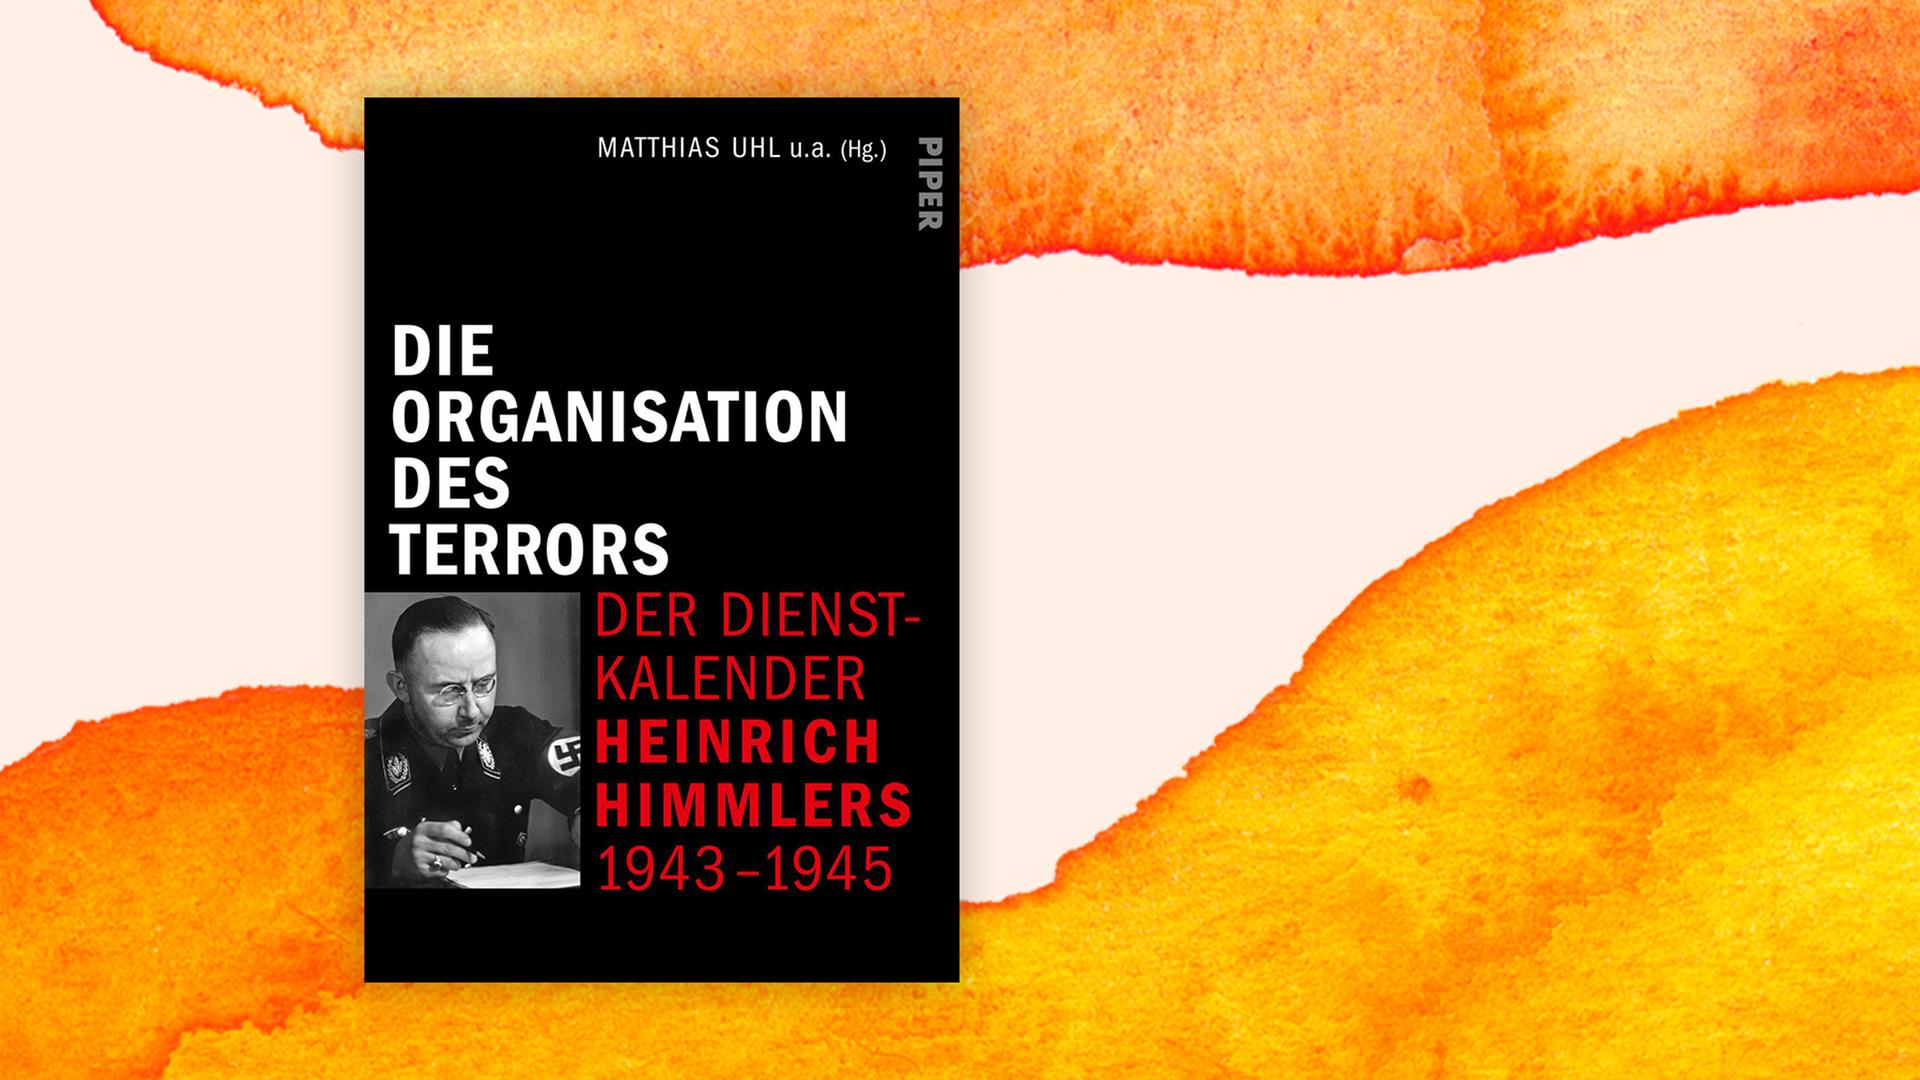 Buchcover zu Matthias Uhls "Die Organisation des Terrors - Der Dienstkalender Heinrich Himmlers 1943-1945".